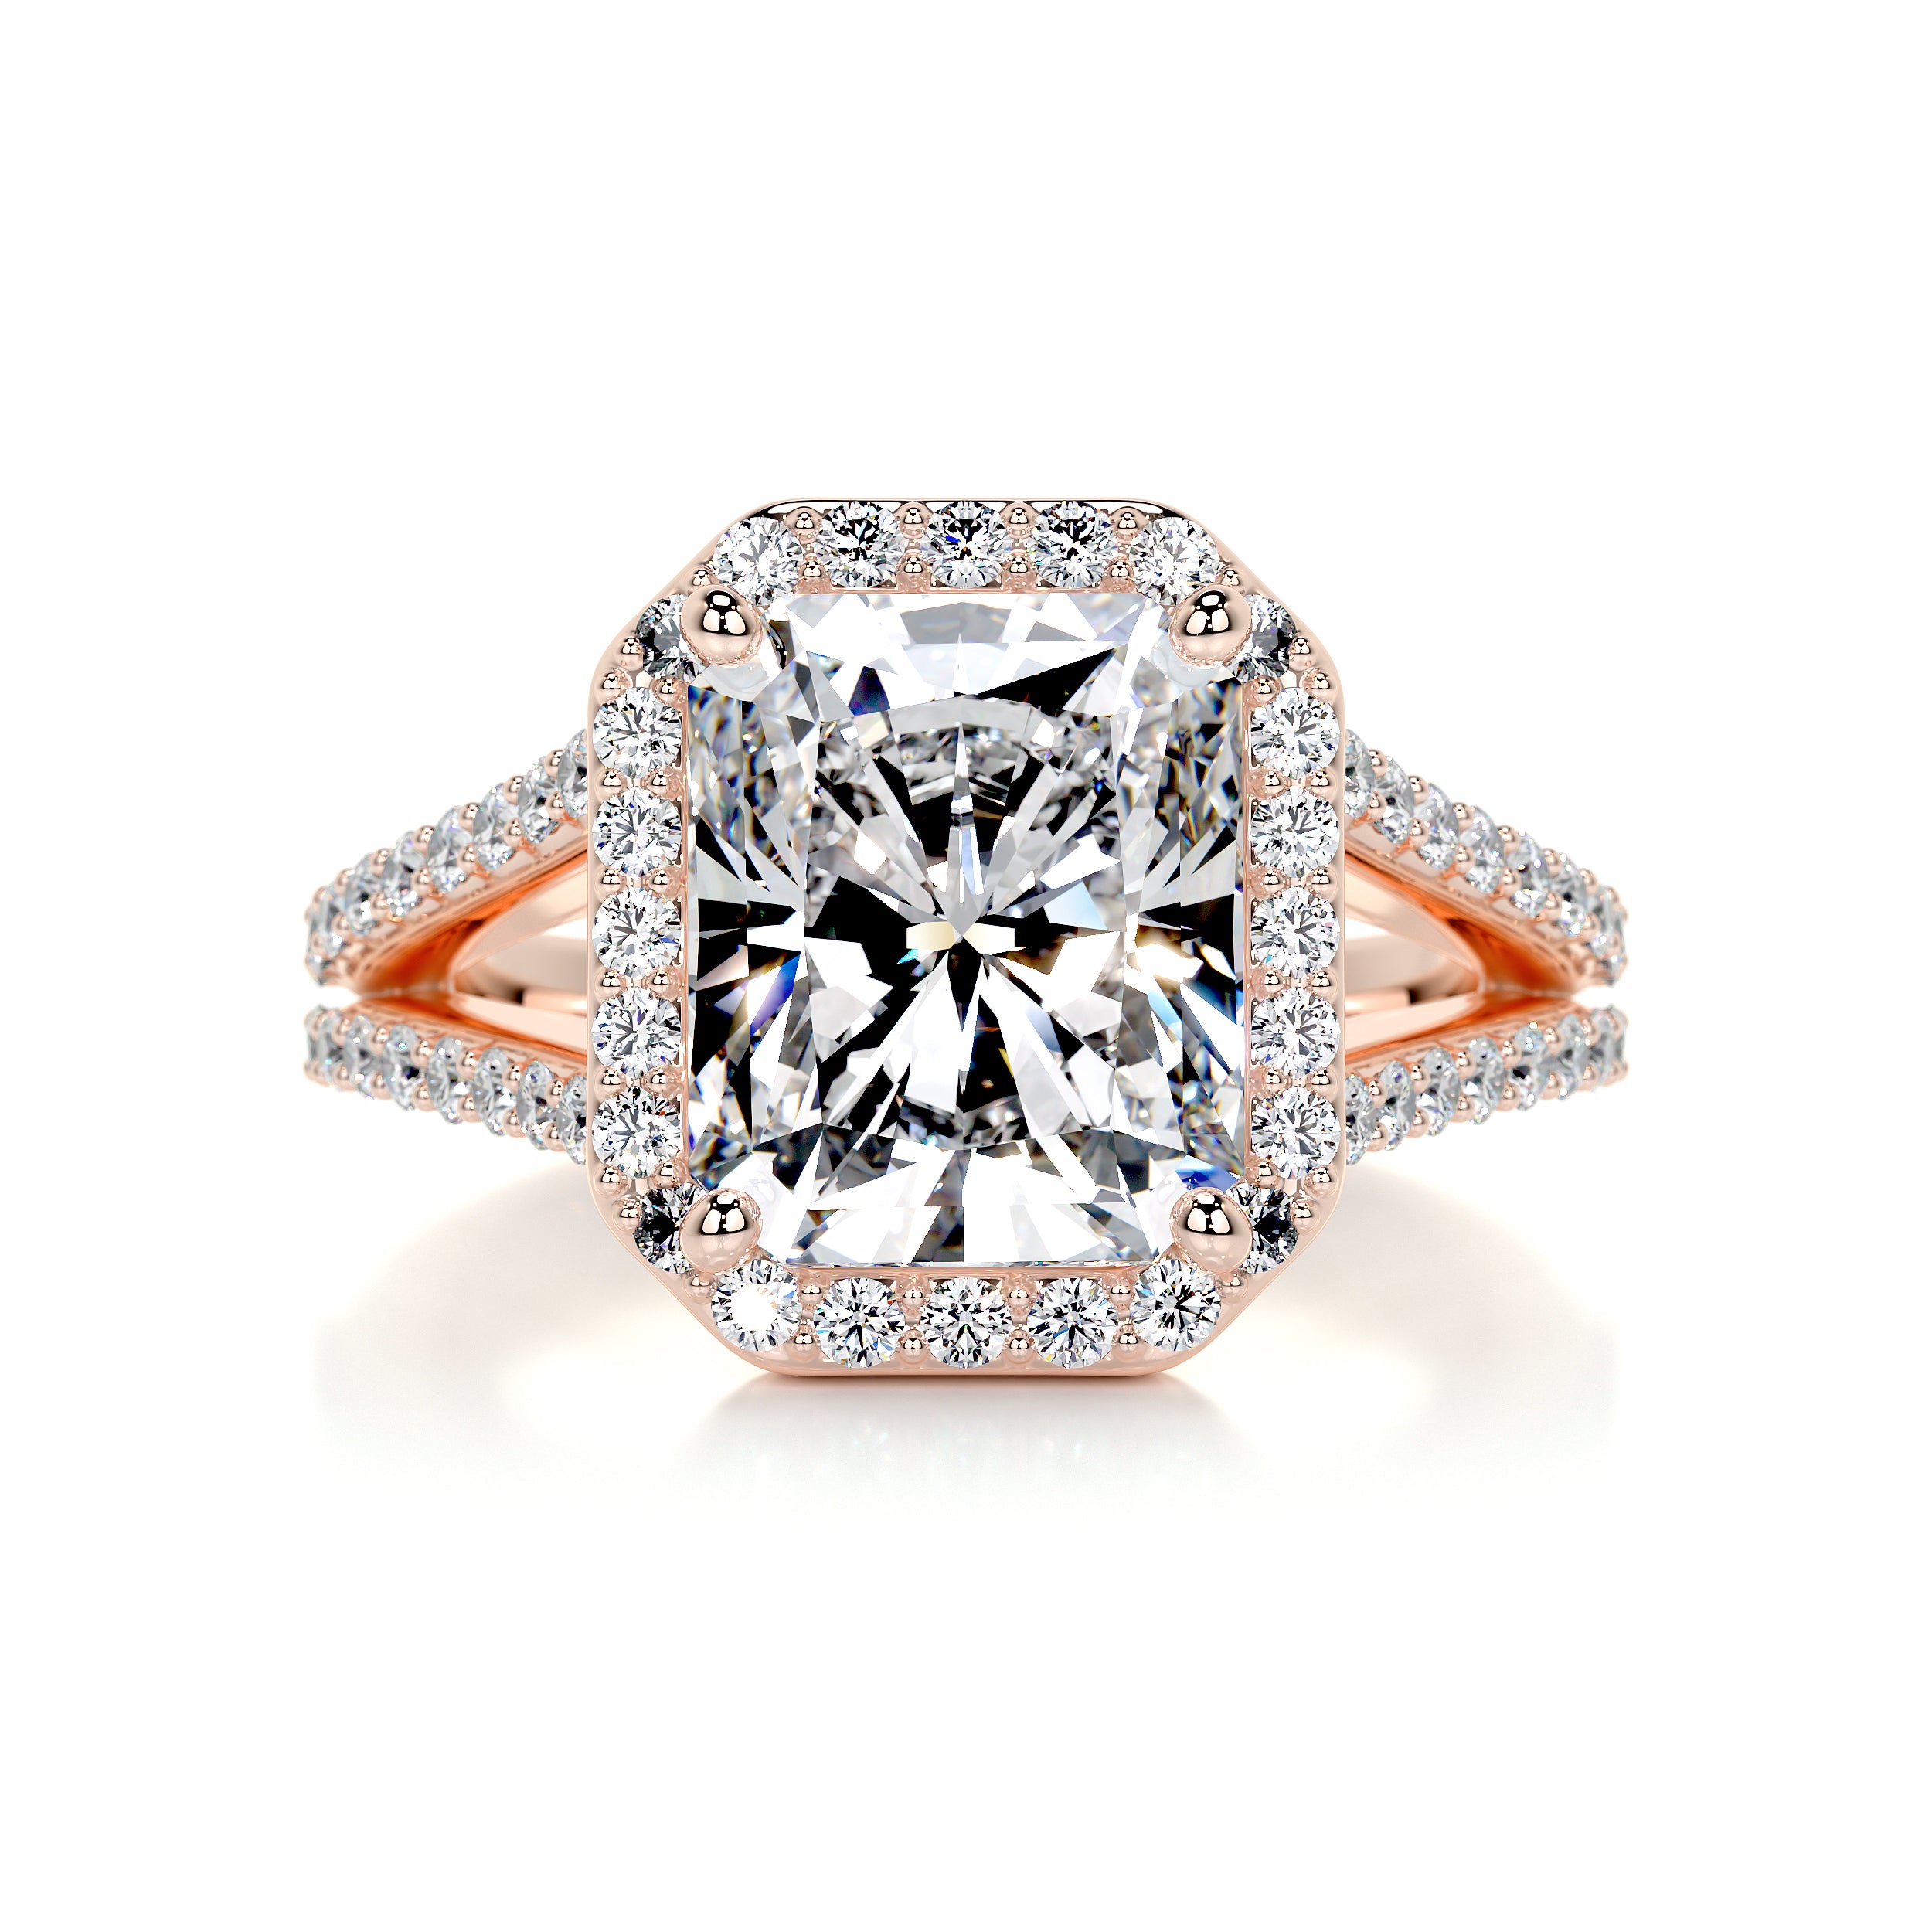 Marina Diamond Engagement Ring   (3.5 Carat) -14K Rose Gold